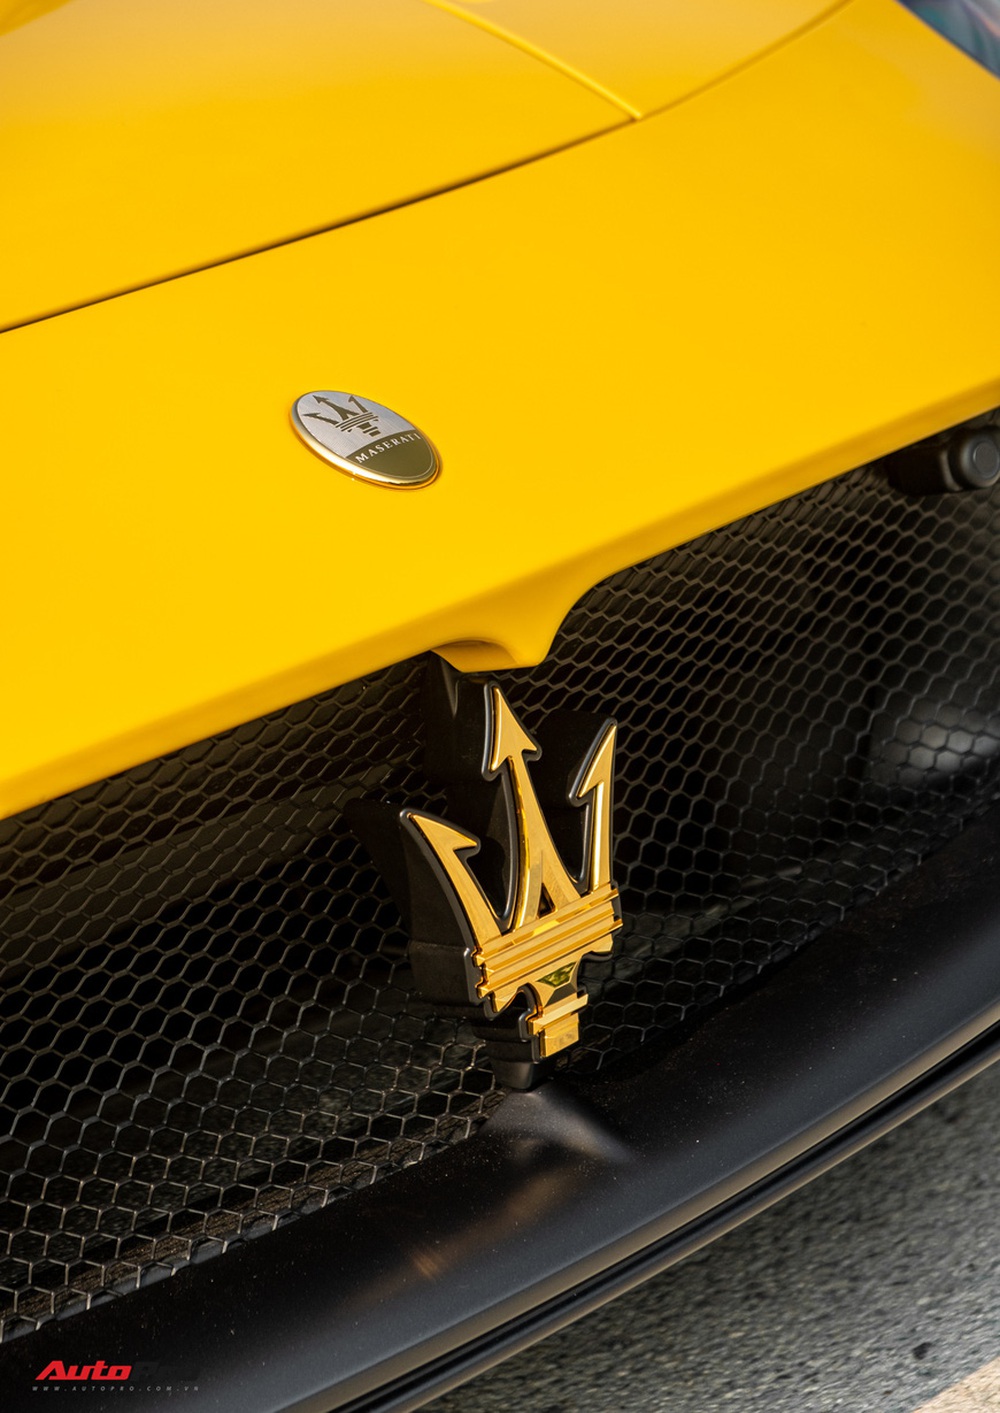 Đại gia Tây Ninh mang siêu xe Maserati MC20 đi mạ vàng: Chi phí hơn 2 tỷ đồng, 1.000 giờ thi công, độc nhất thế giới - Ảnh 6.